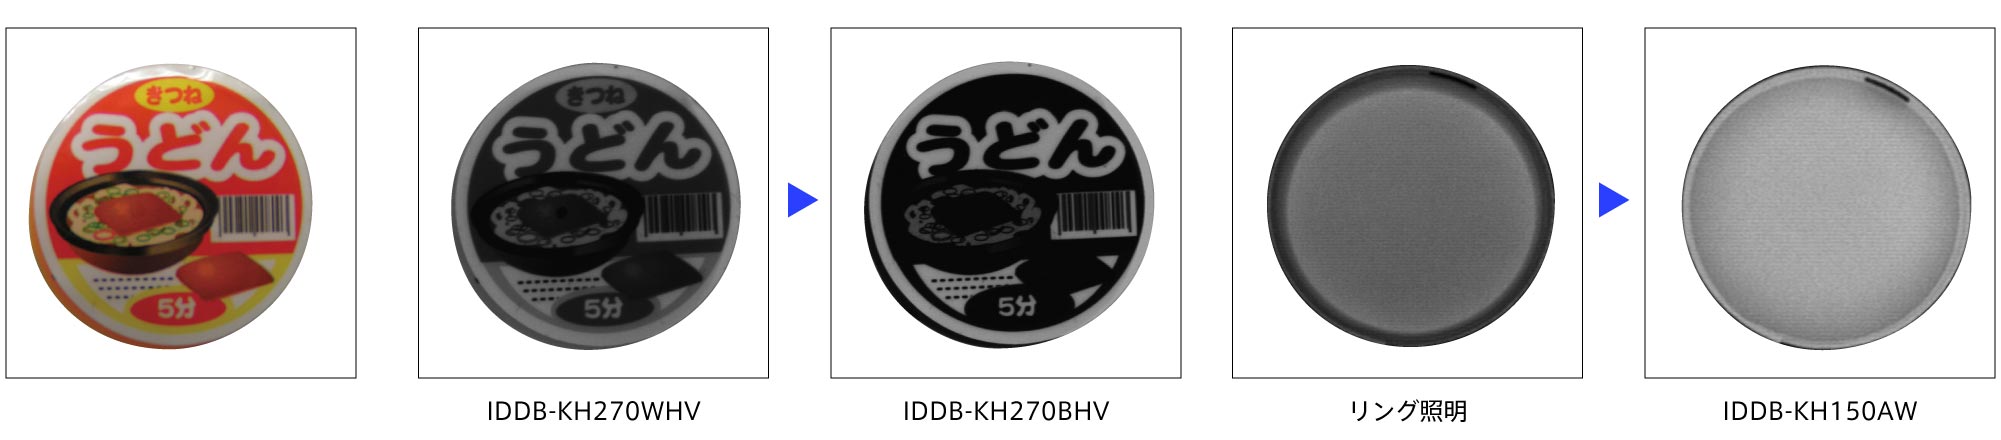 IDDB-KH Product Description 02